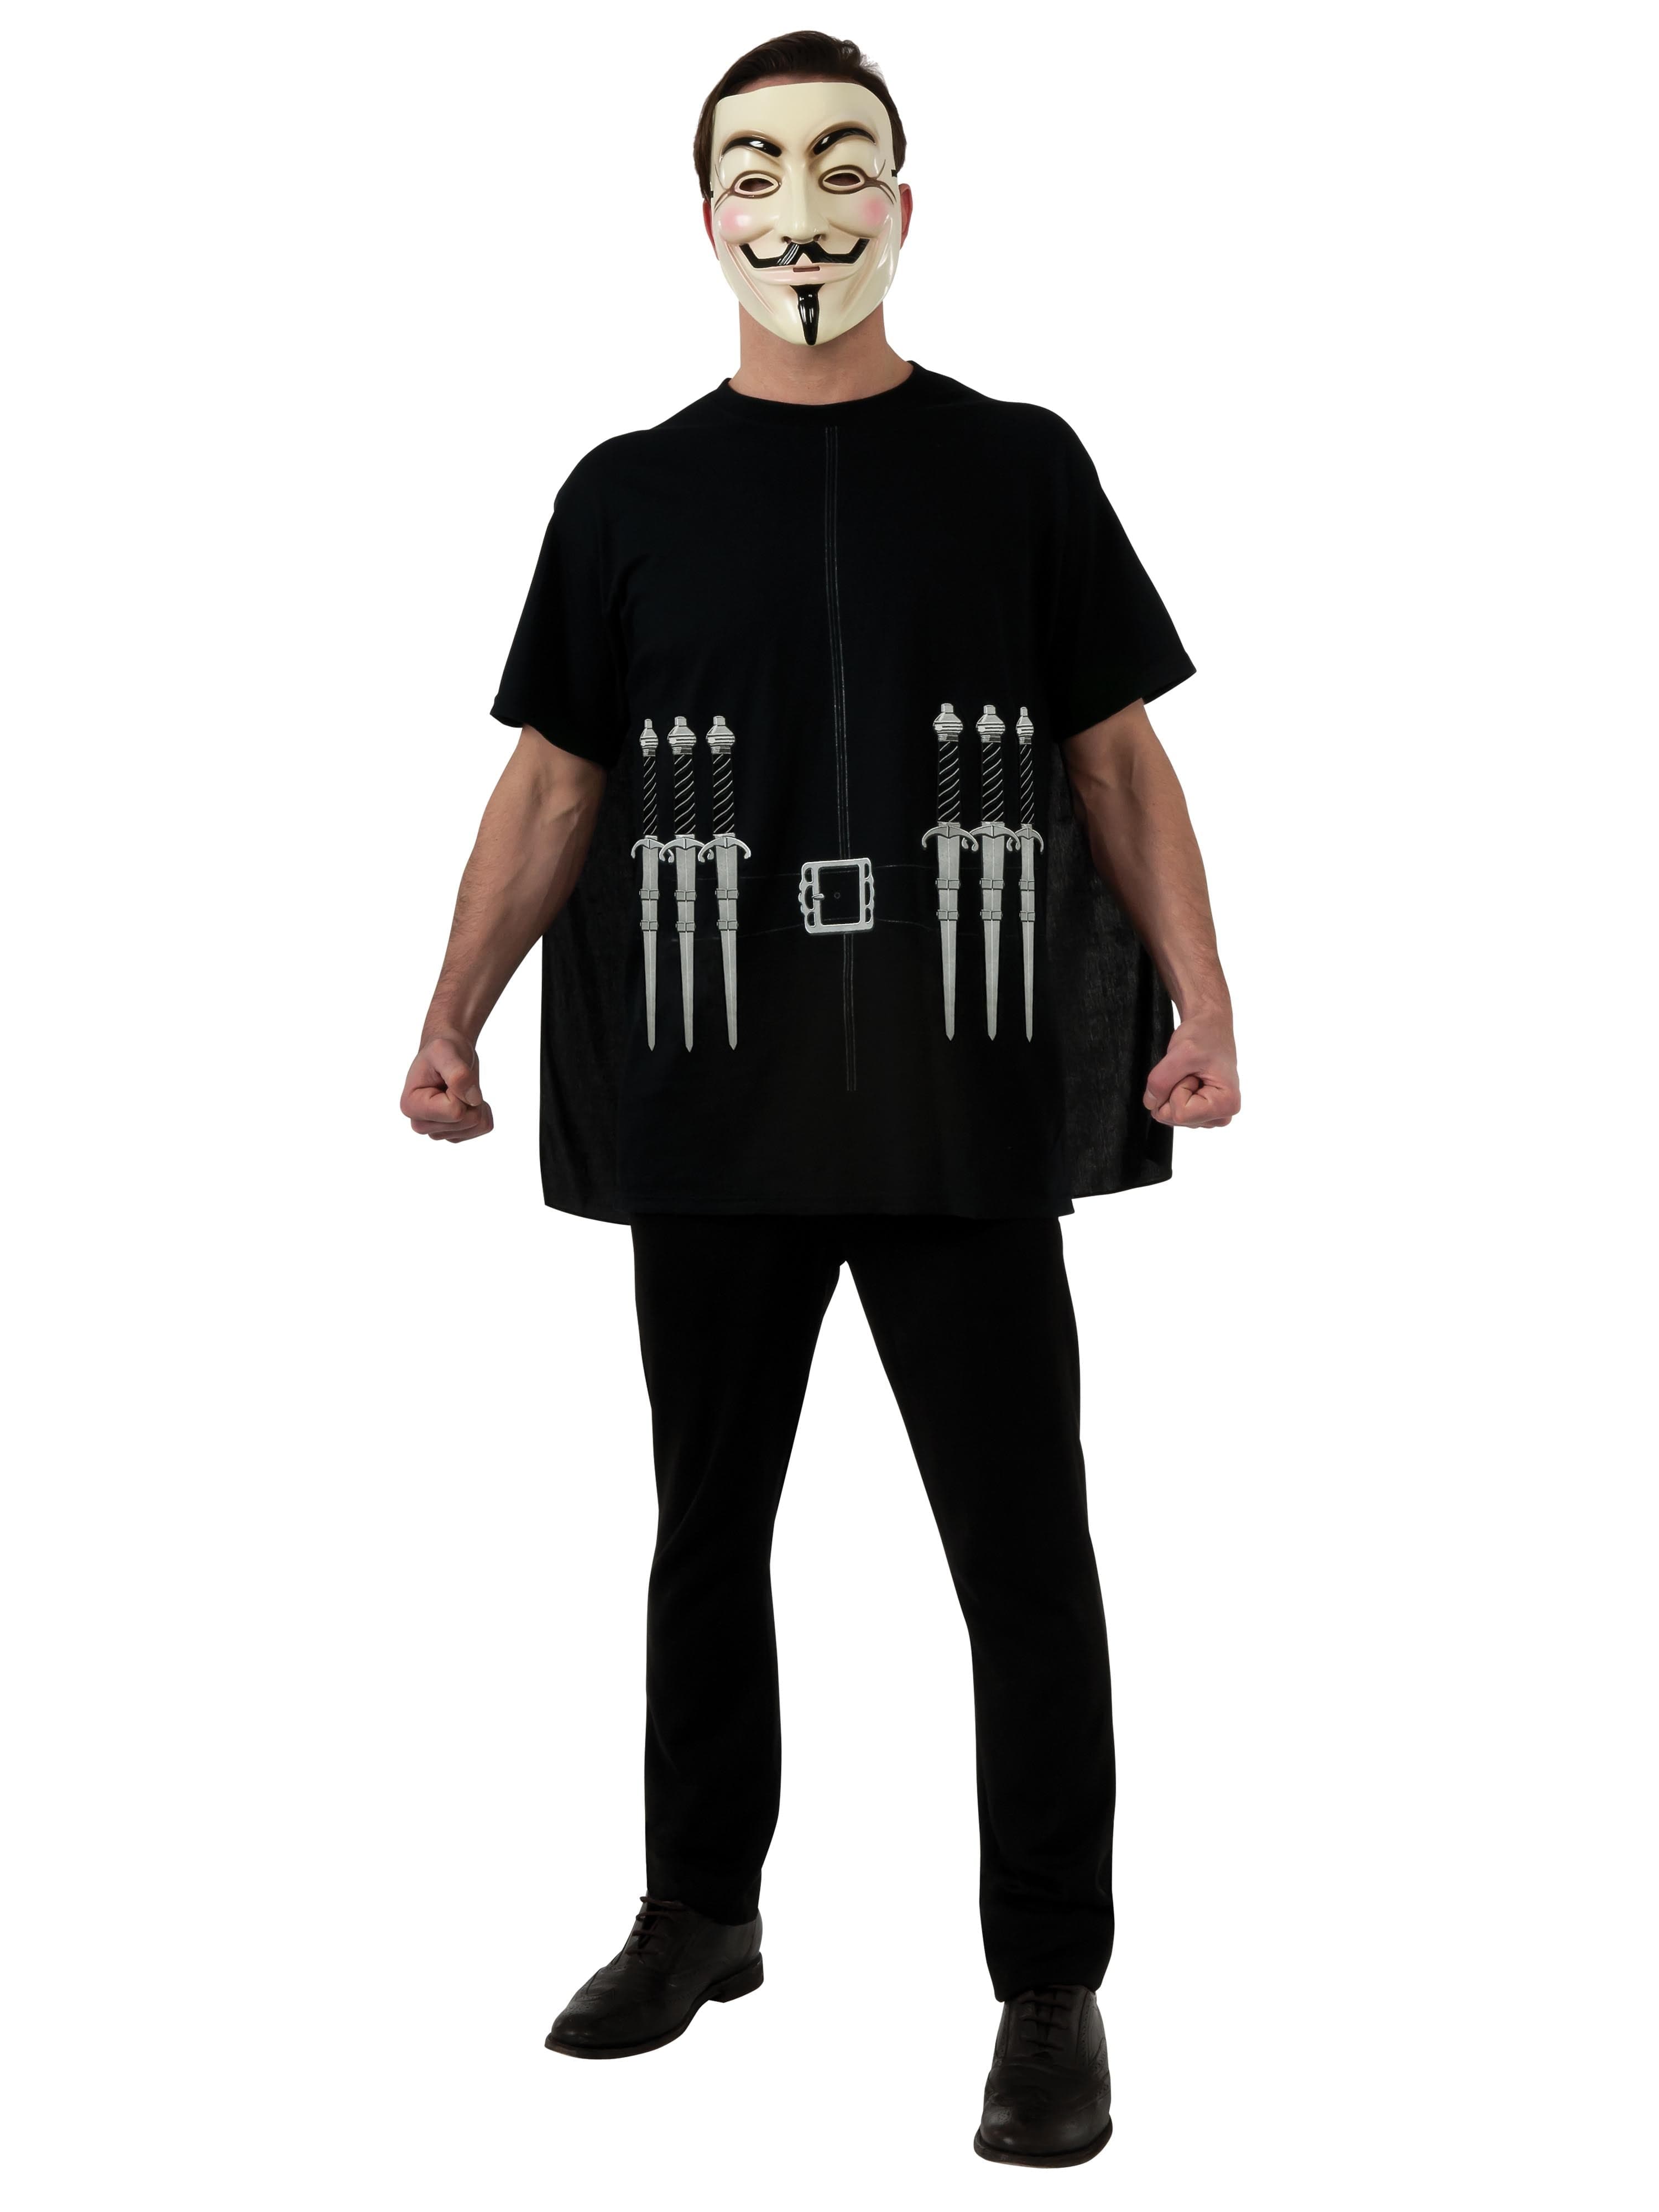 Men's V For Vendetta Costume - costumes.com